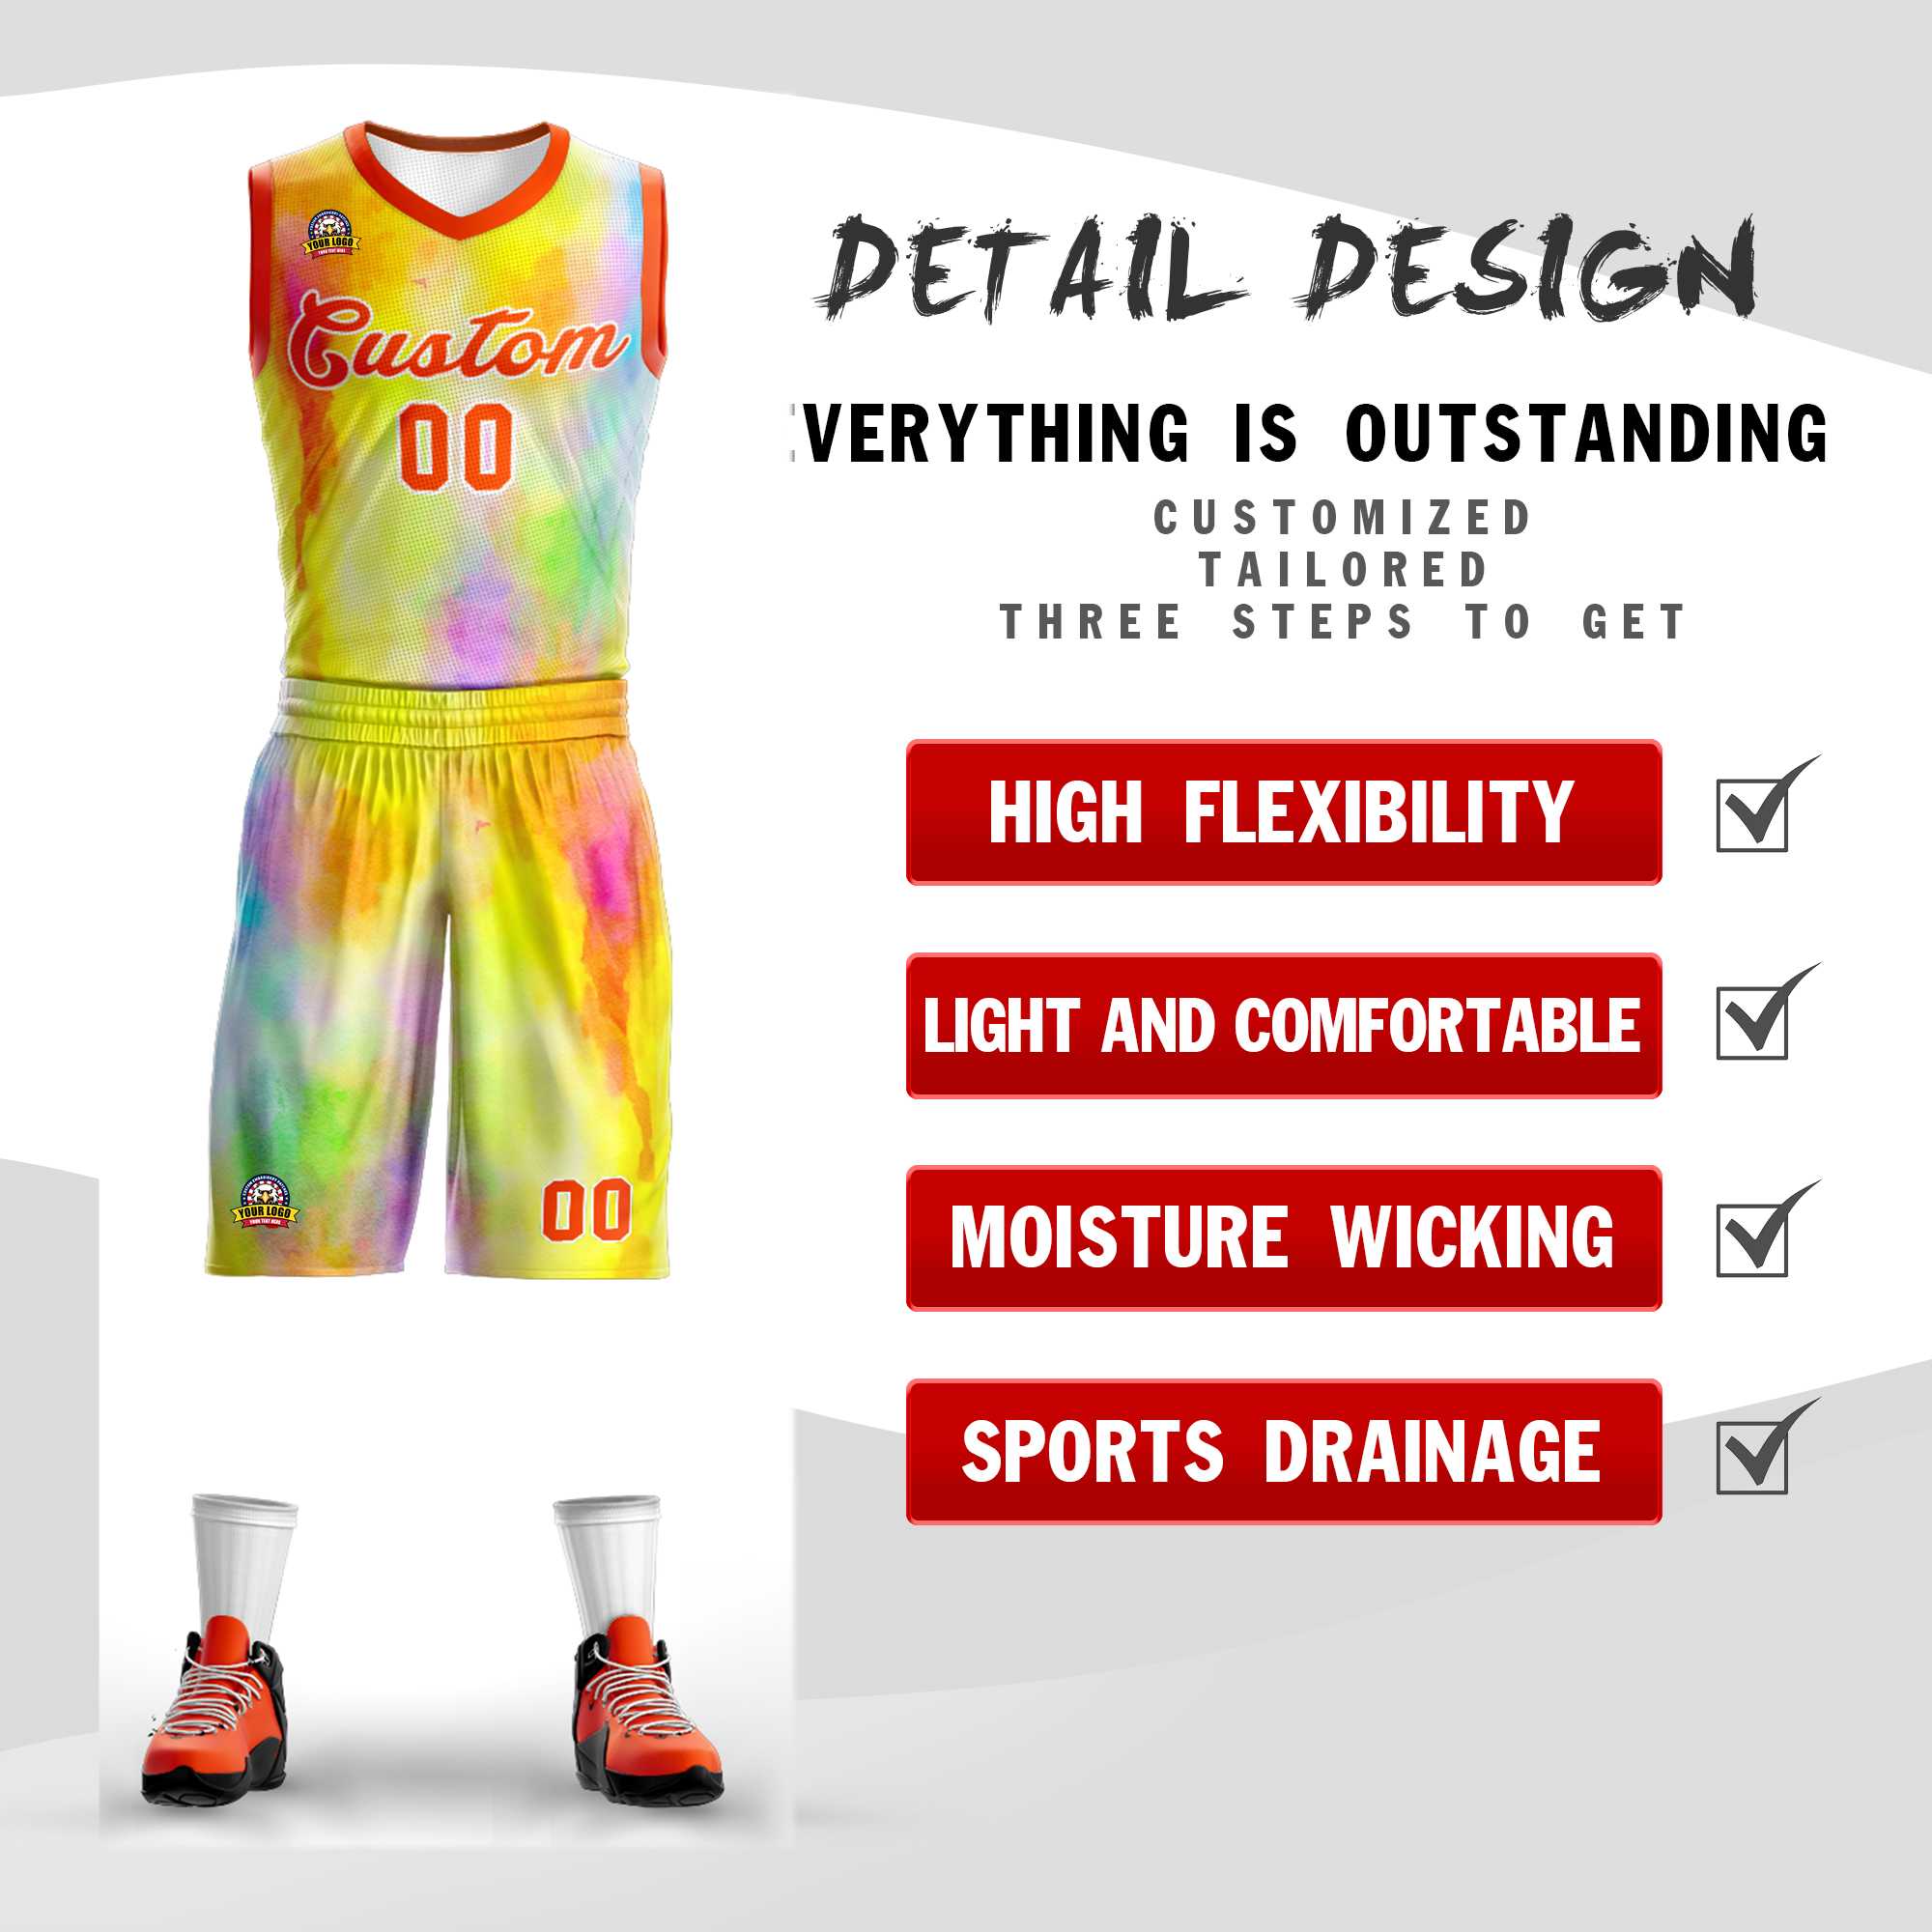 Custom Yellow Orange-White Graffiti Pattern Sets Mesh Basketball Jersey